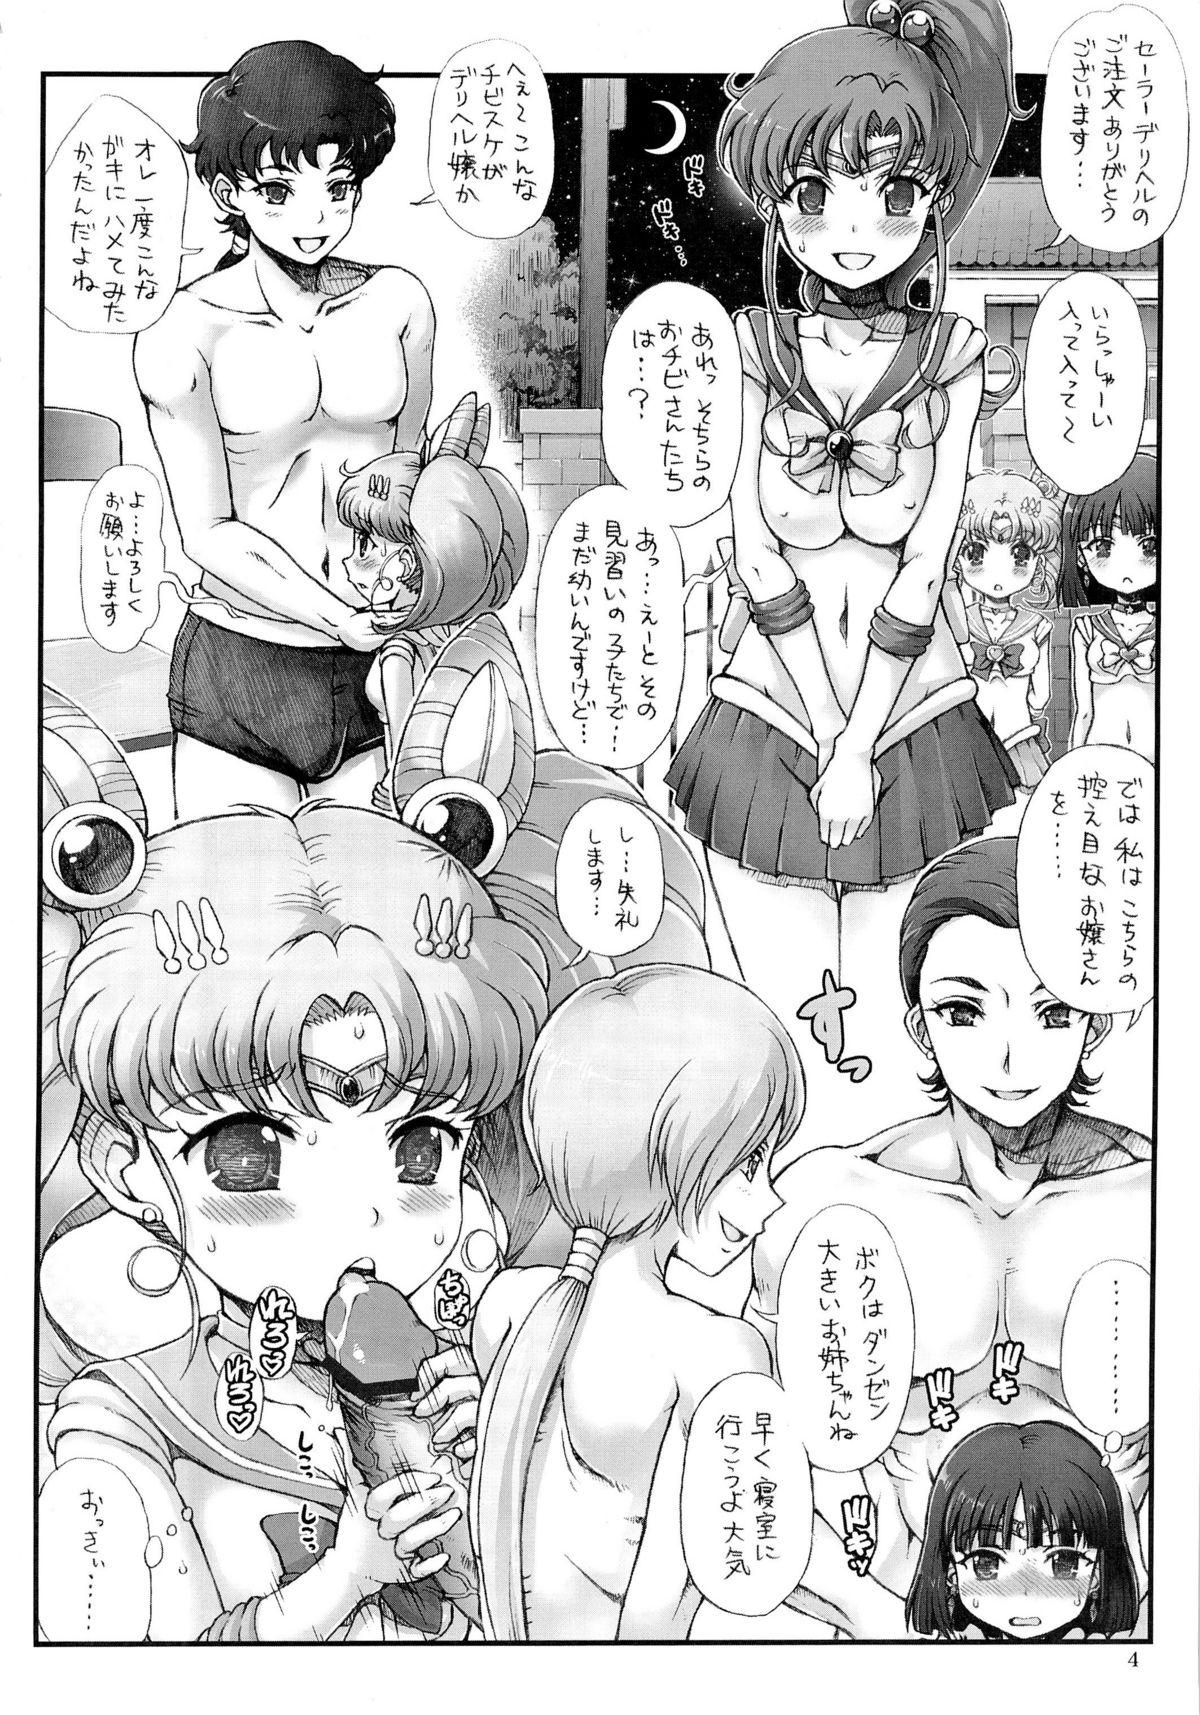 Stepbro Sailor Delivery Health - Sailor moon Dominatrix - Page 4